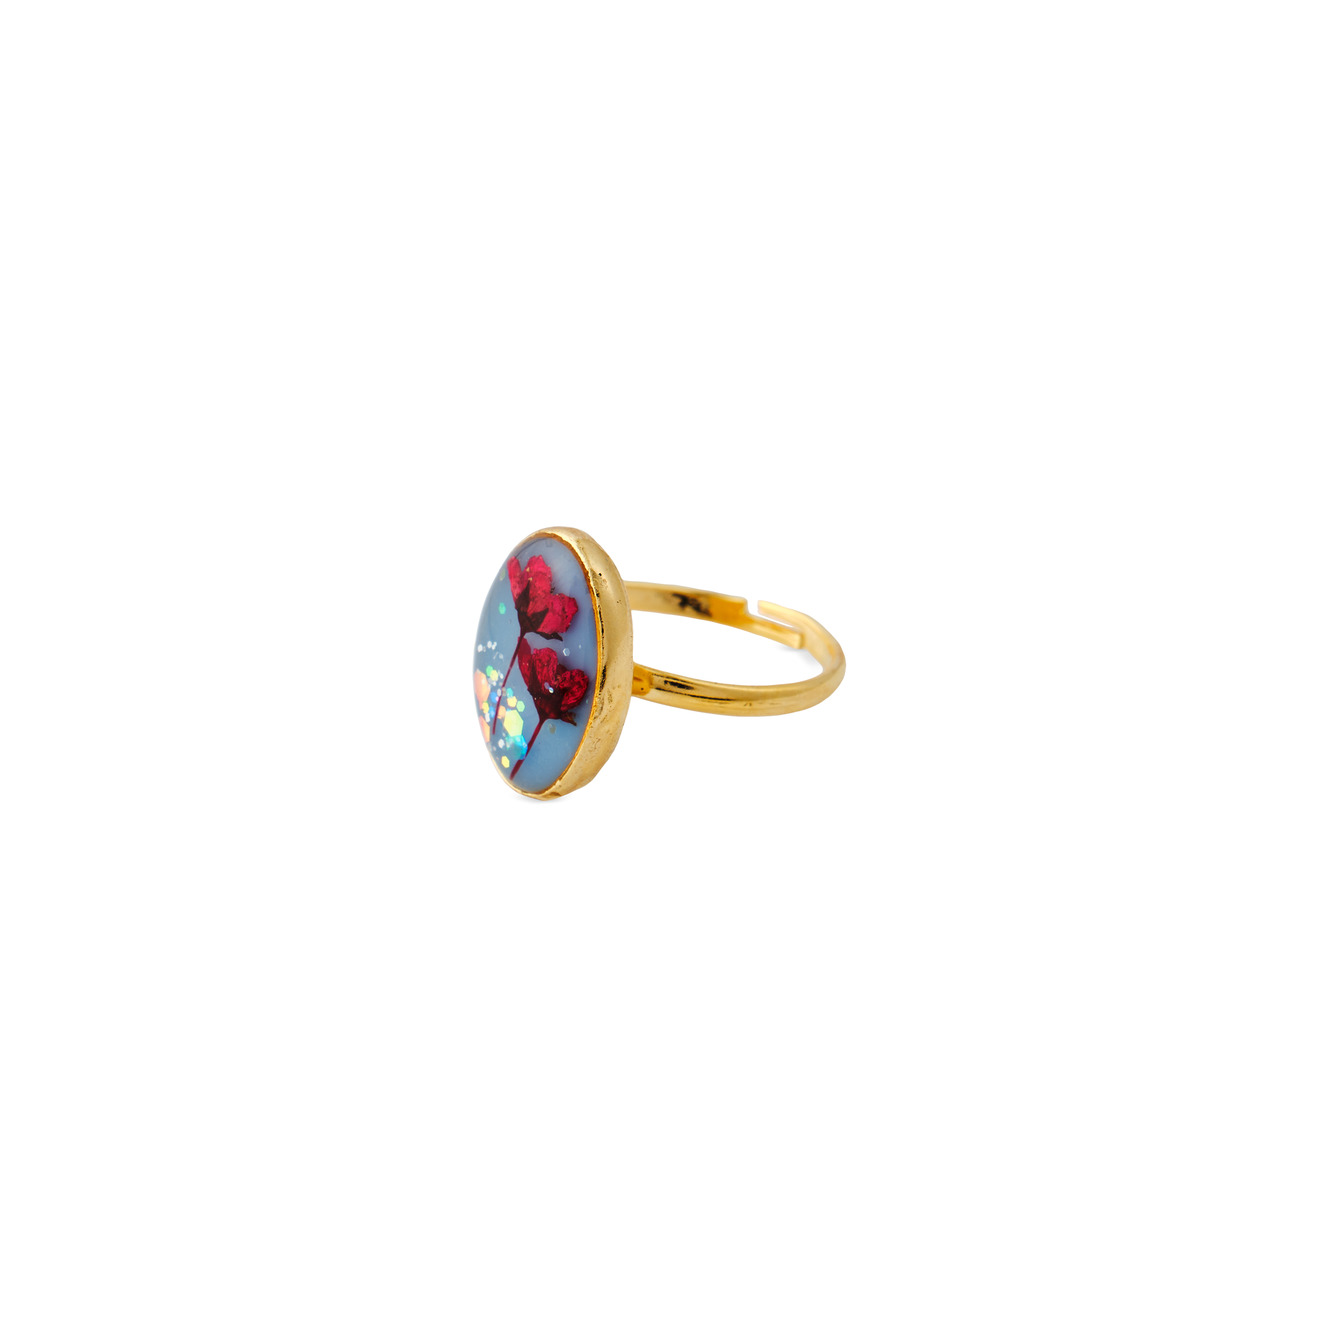 Wisteria Gems Золотистое овальное голубое кольцо с красными цветками